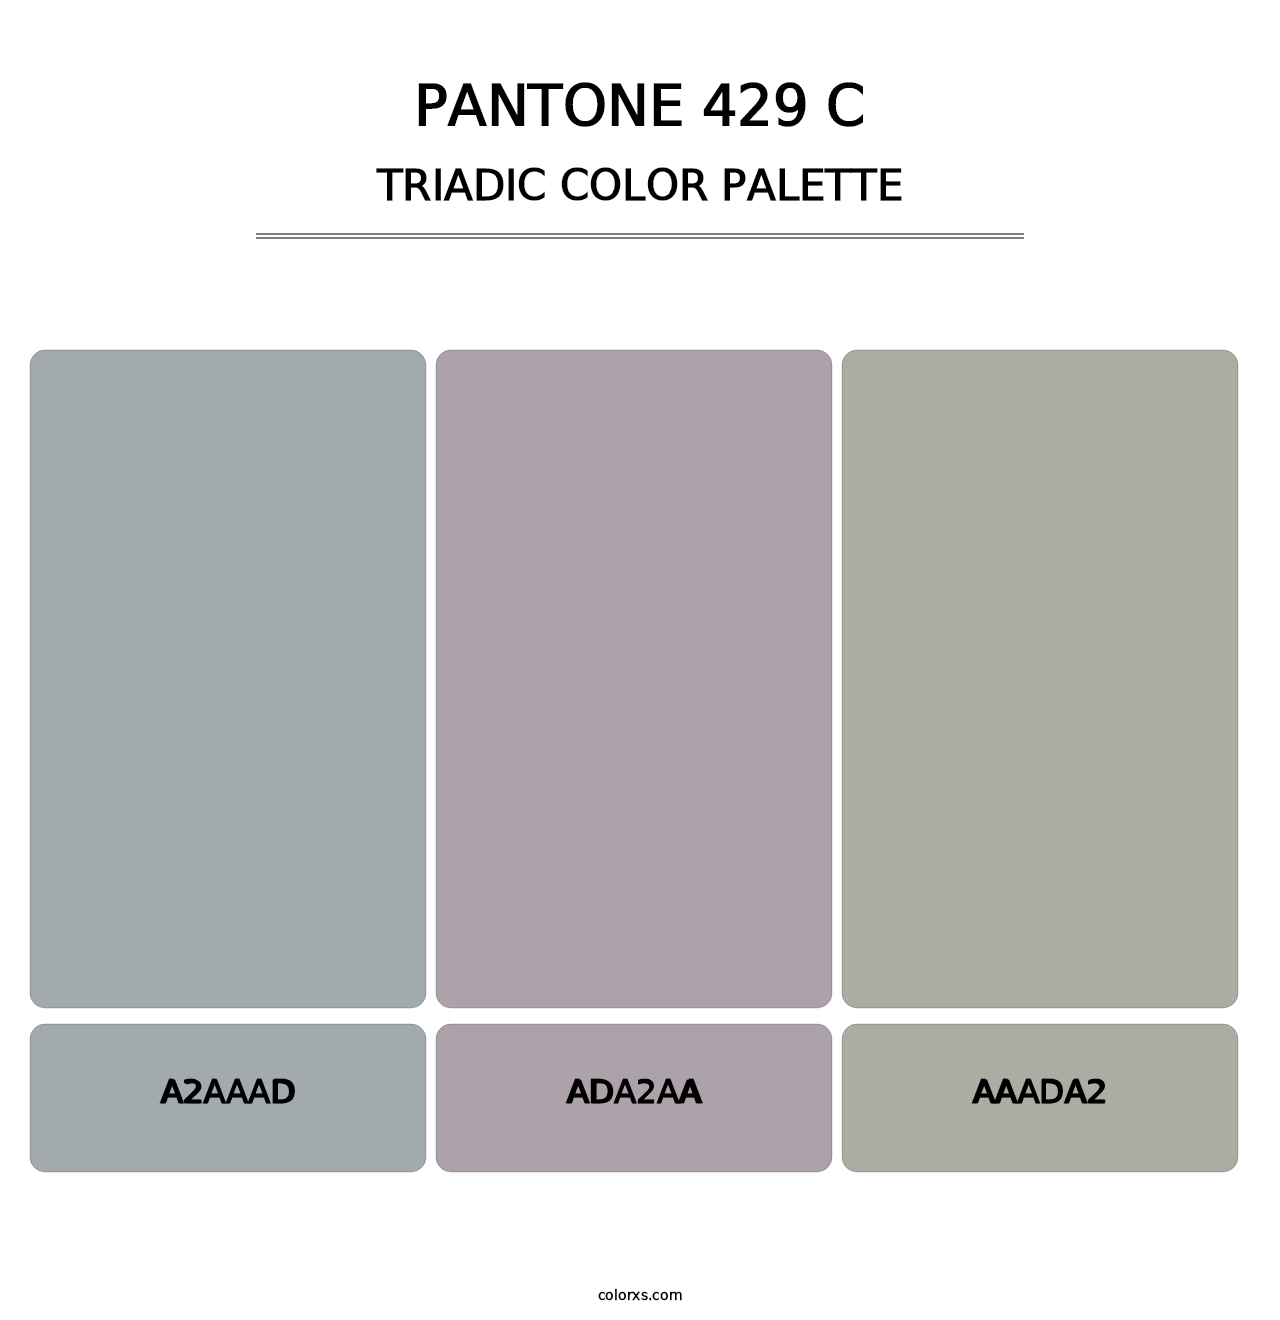 PANTONE 429 C - Triadic Color Palette